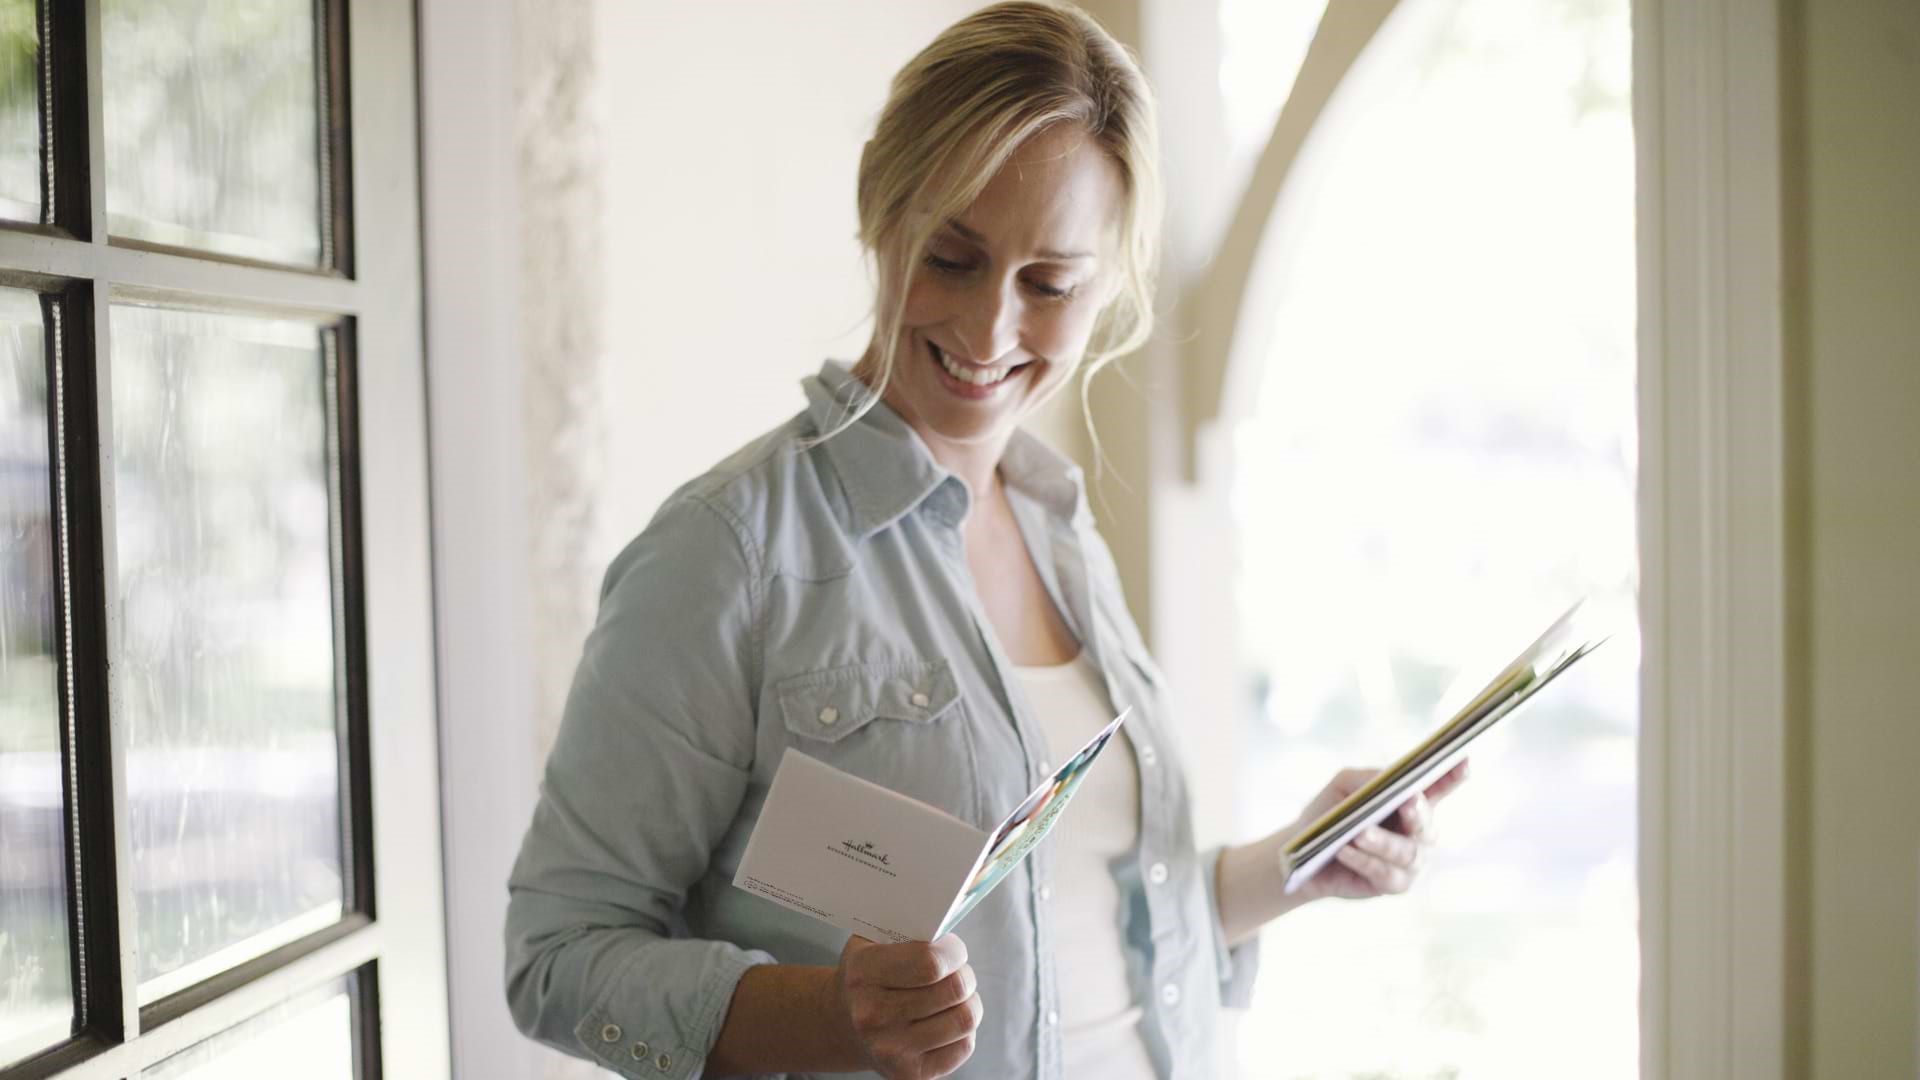 Woman Reading Greeting Card in Doorway ARTICLE HERO IMAGE